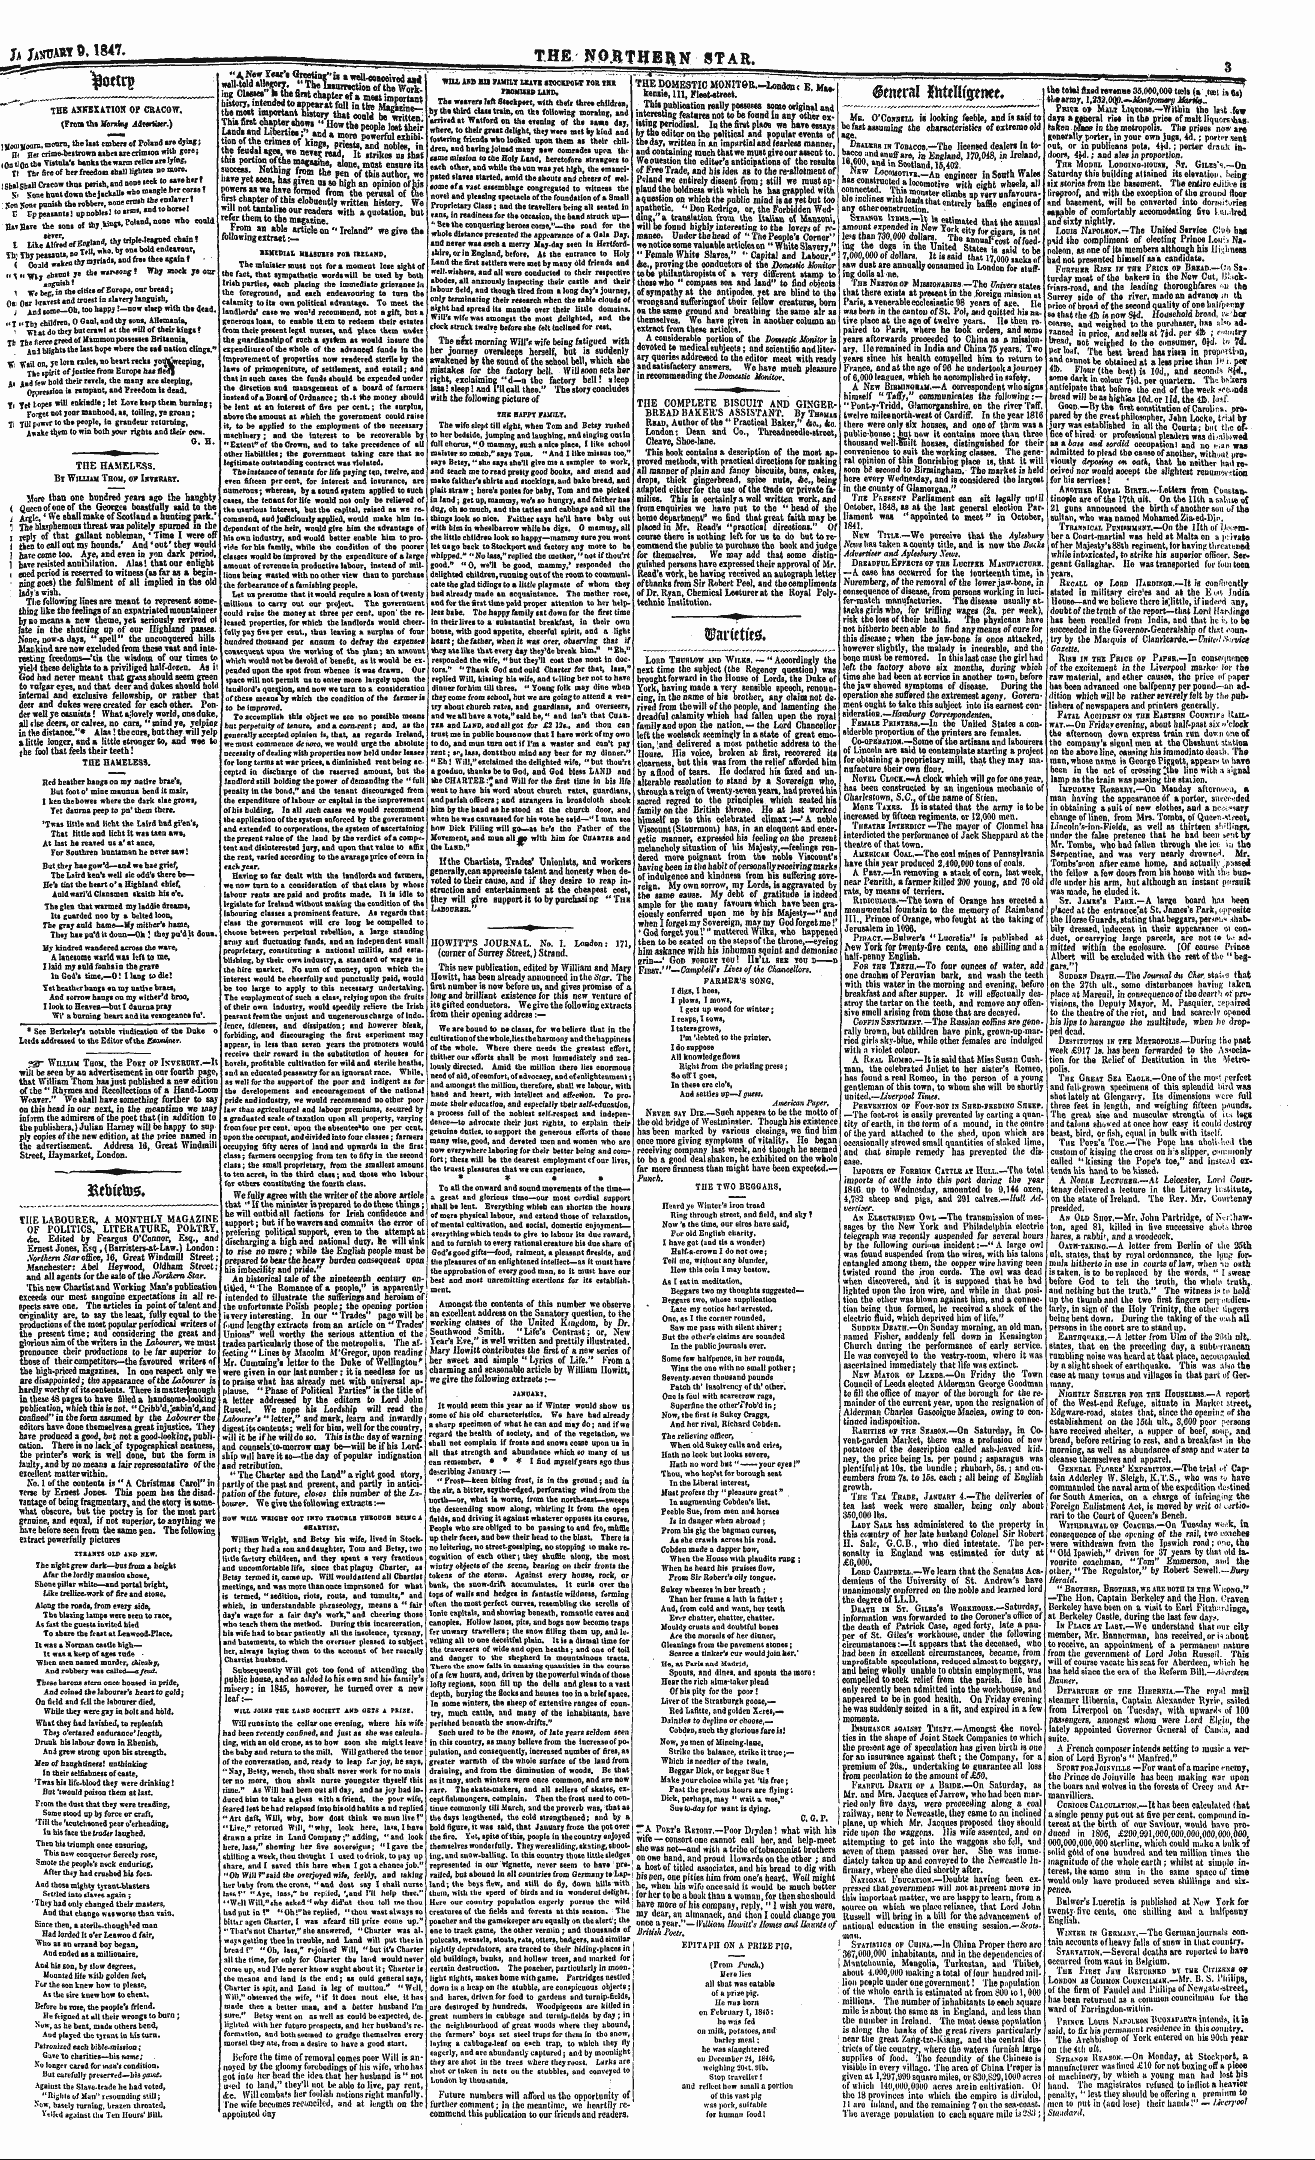 Northern Star (1837-1852): jS F Y, 3rd edition - Fcebtetos*